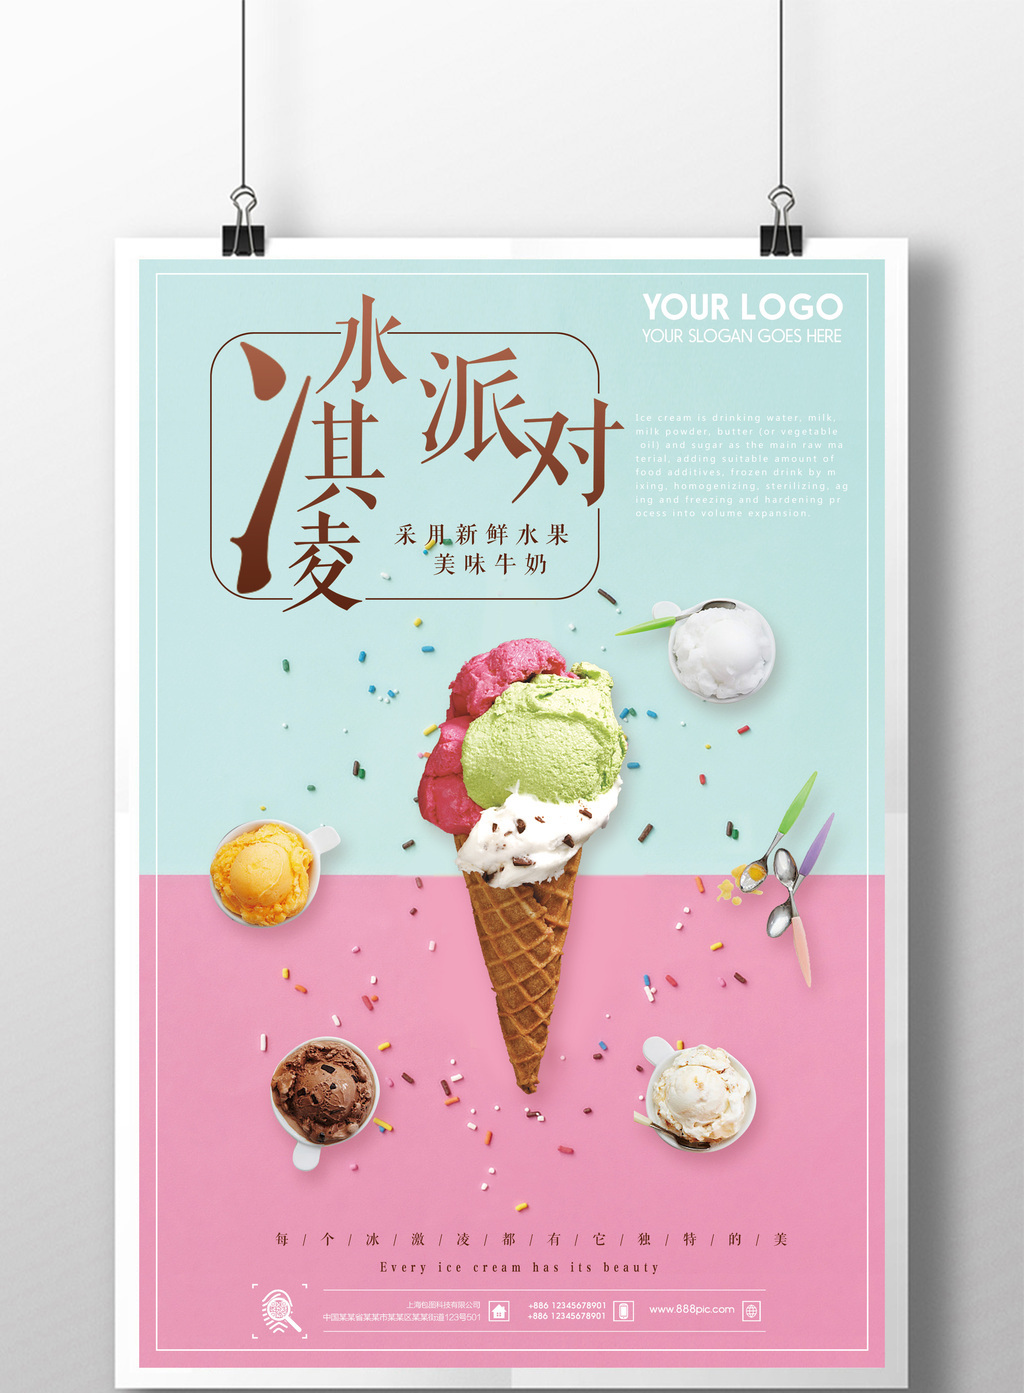 包图 广告设计 海报 > 小清新冷饮冰淇淋海报设计  上传时间2017-05